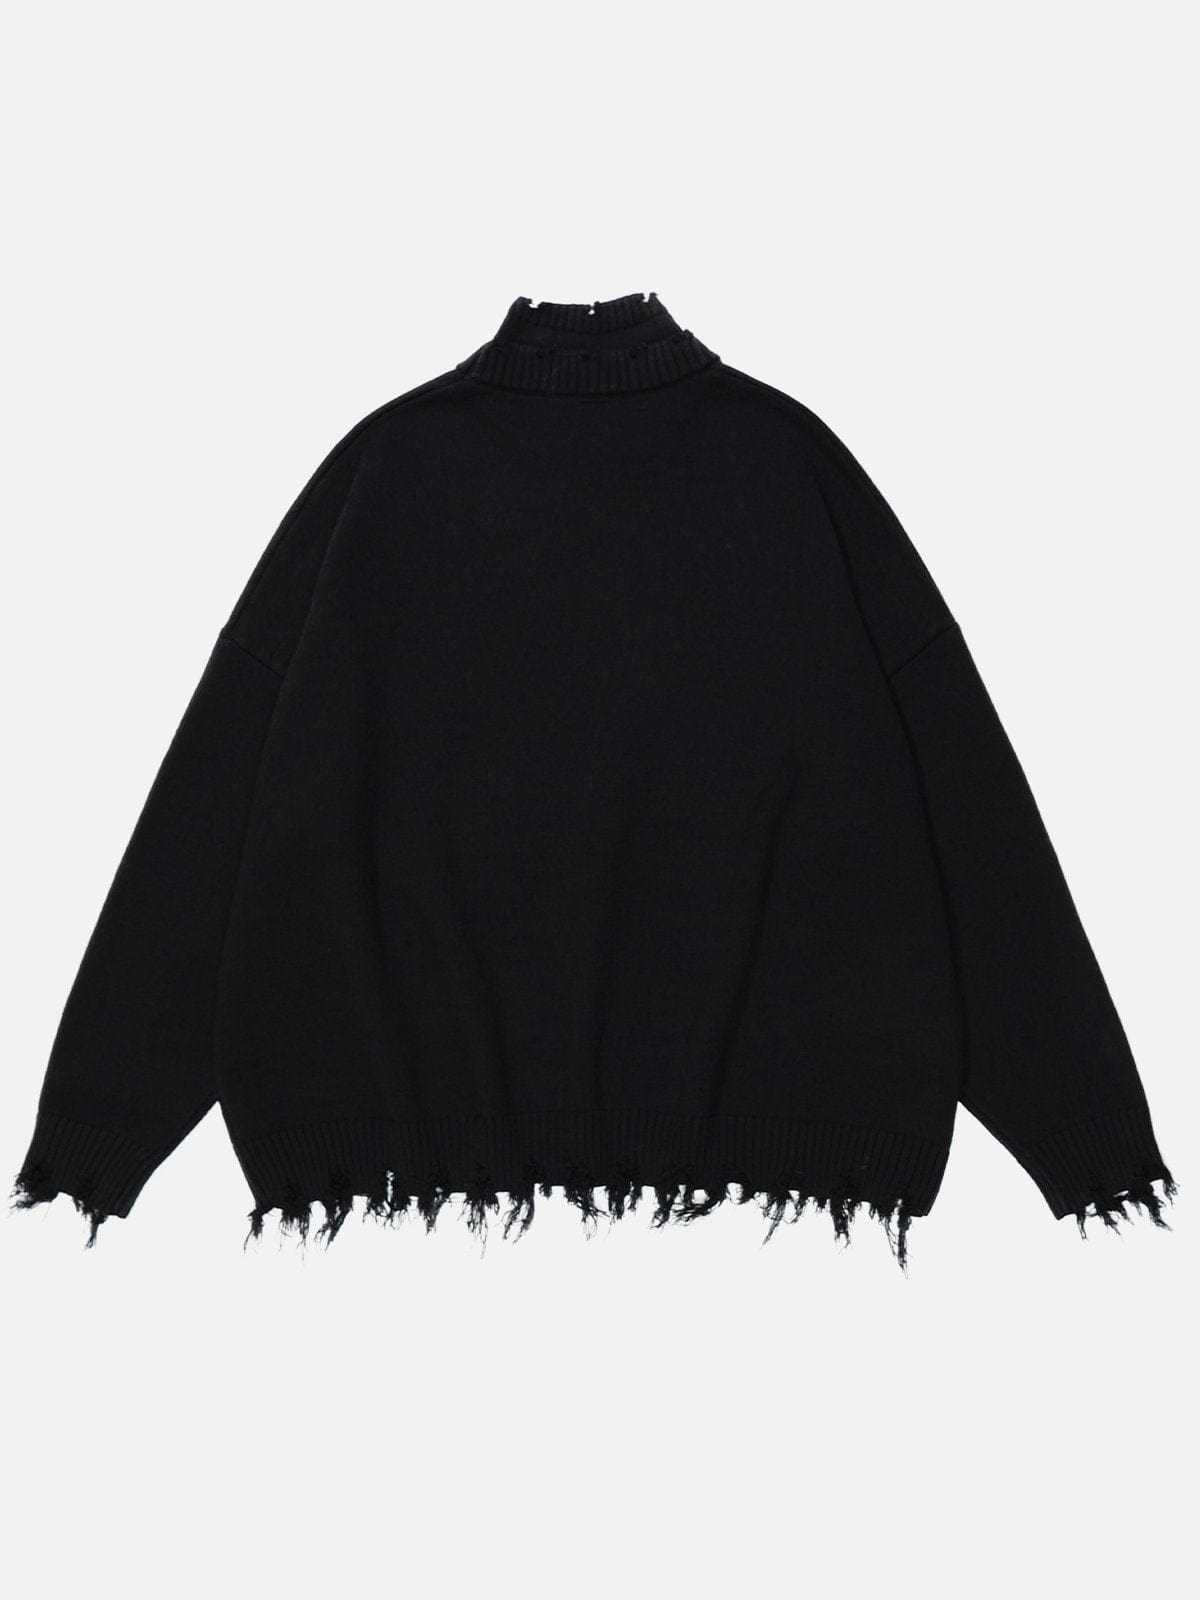 NEV Jacquard Fringe Sweater